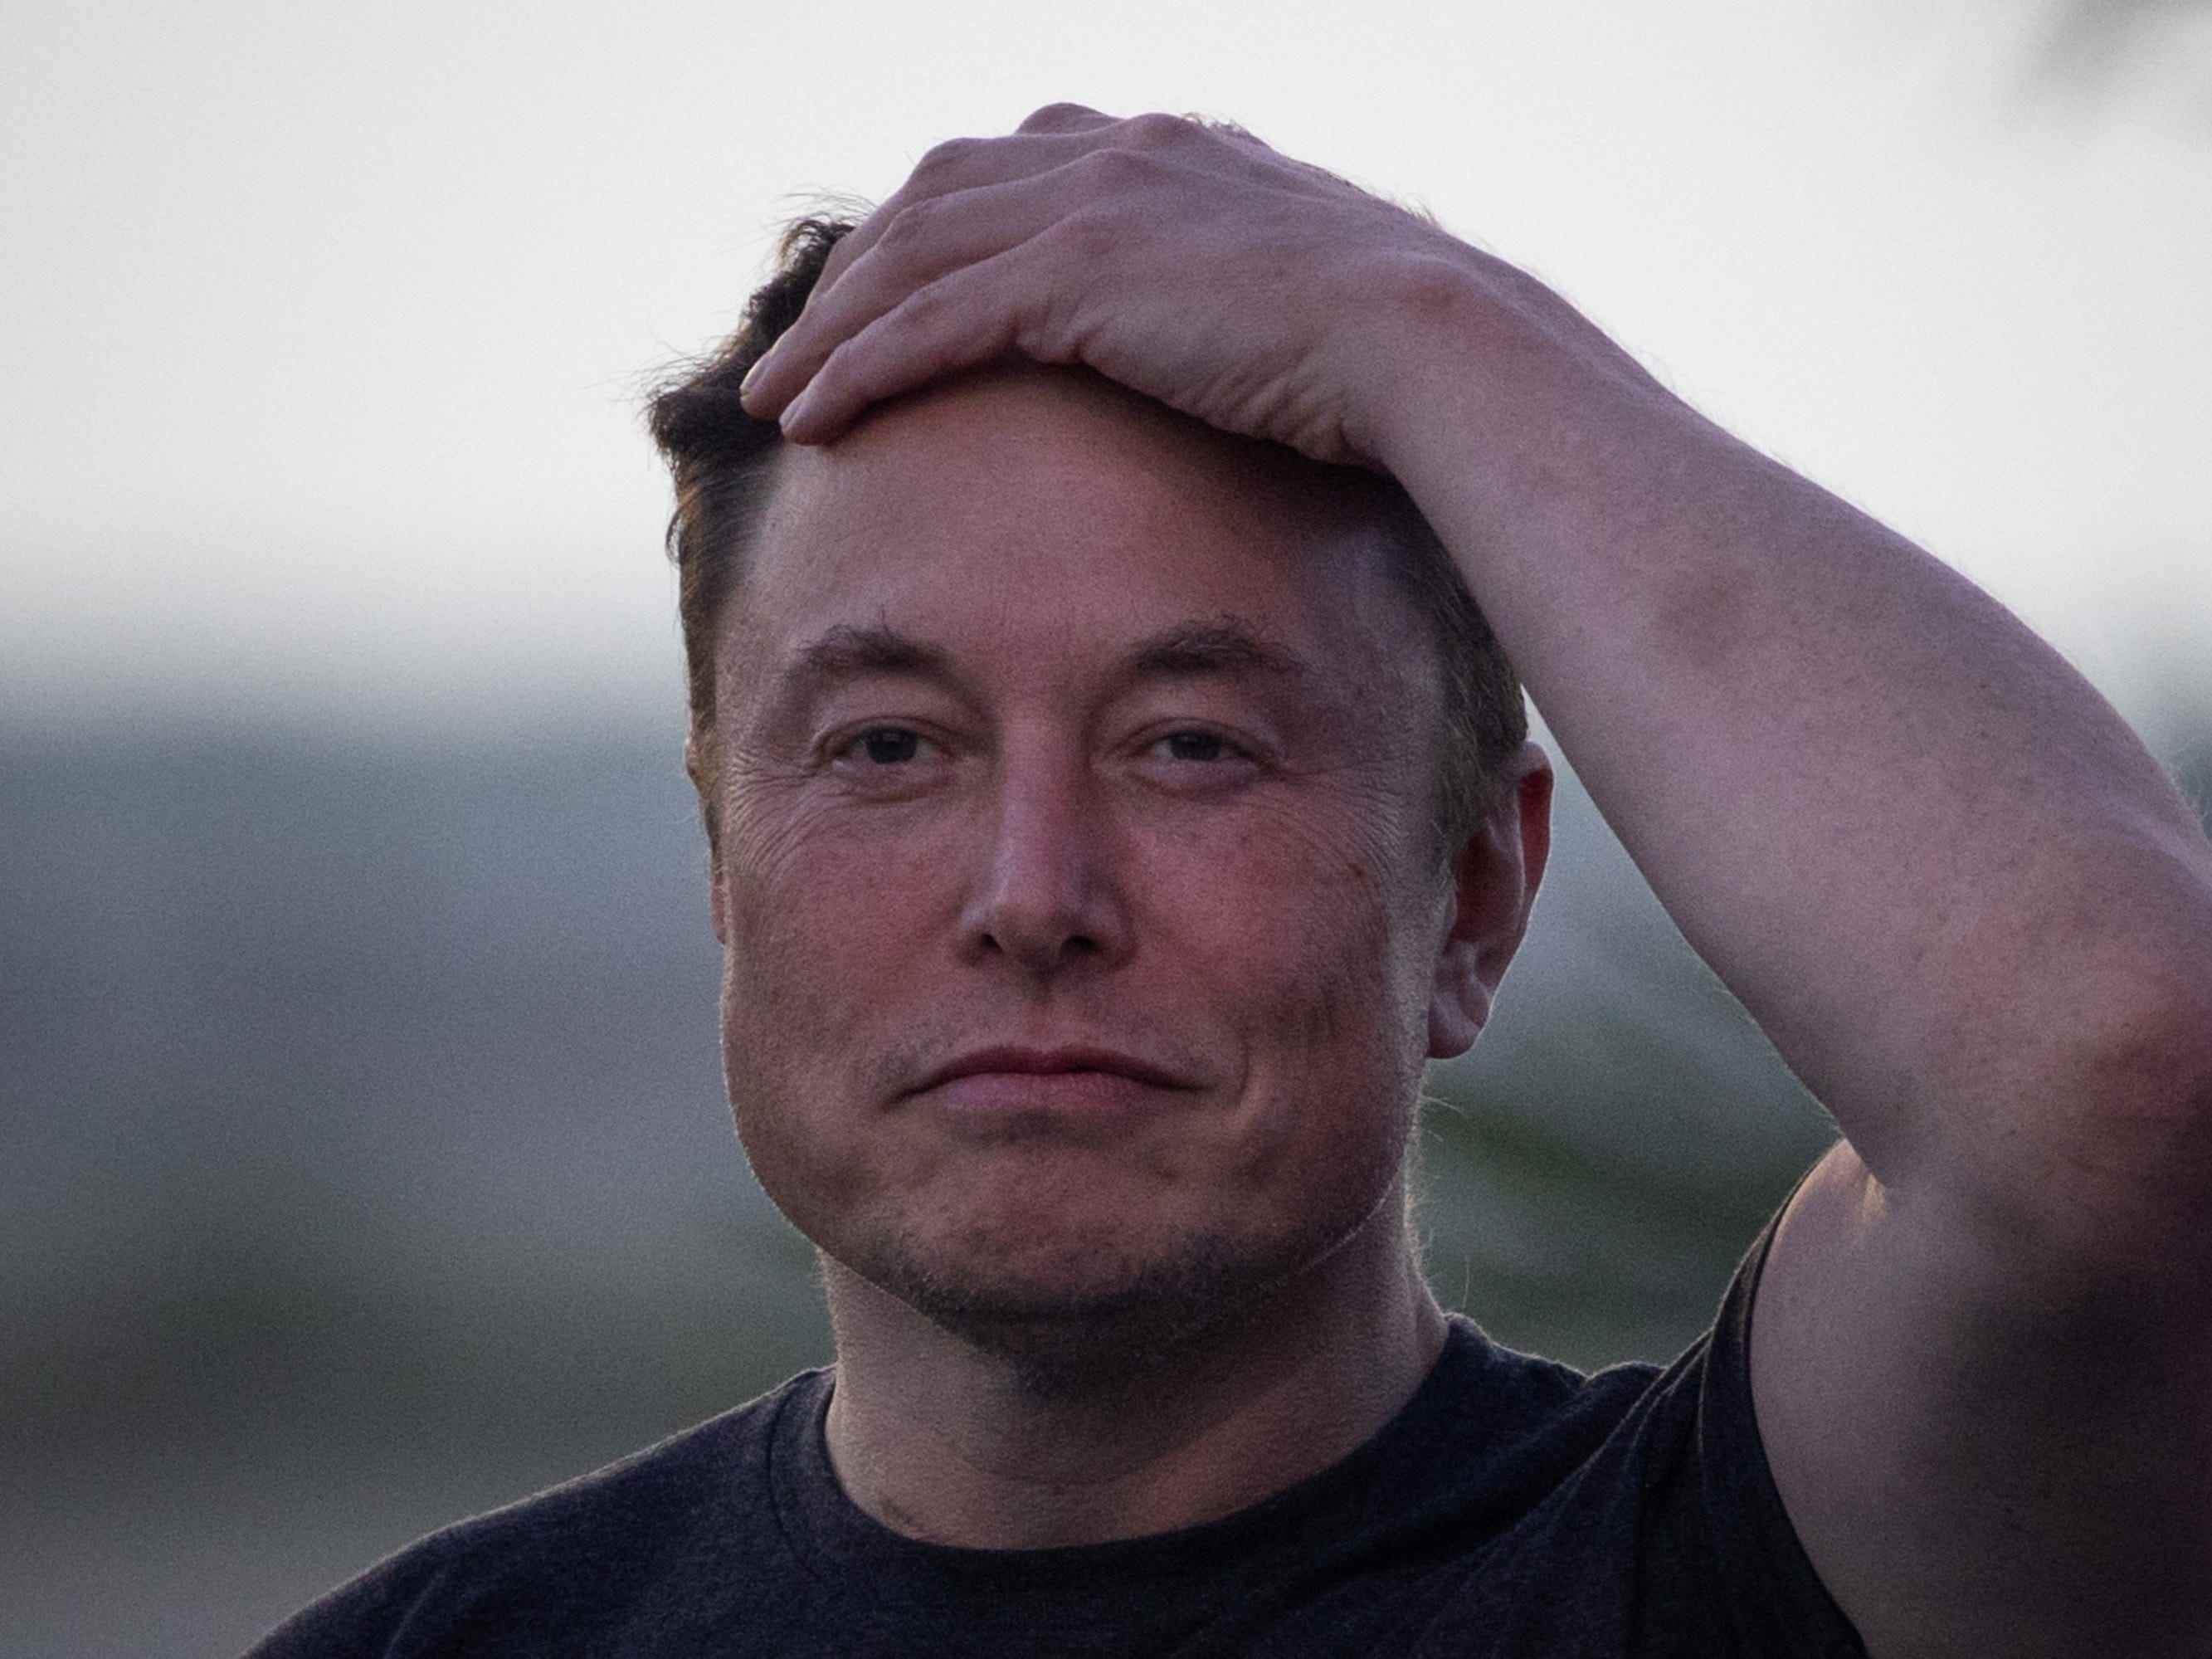 Ein Bild von Elon Musk von den Schultern aufwärts.  Er trägt ein schwarzes T-Shirt und hält sich mit einem ruhigen Gesichtsausdruck die linke Hand an den Kopf.